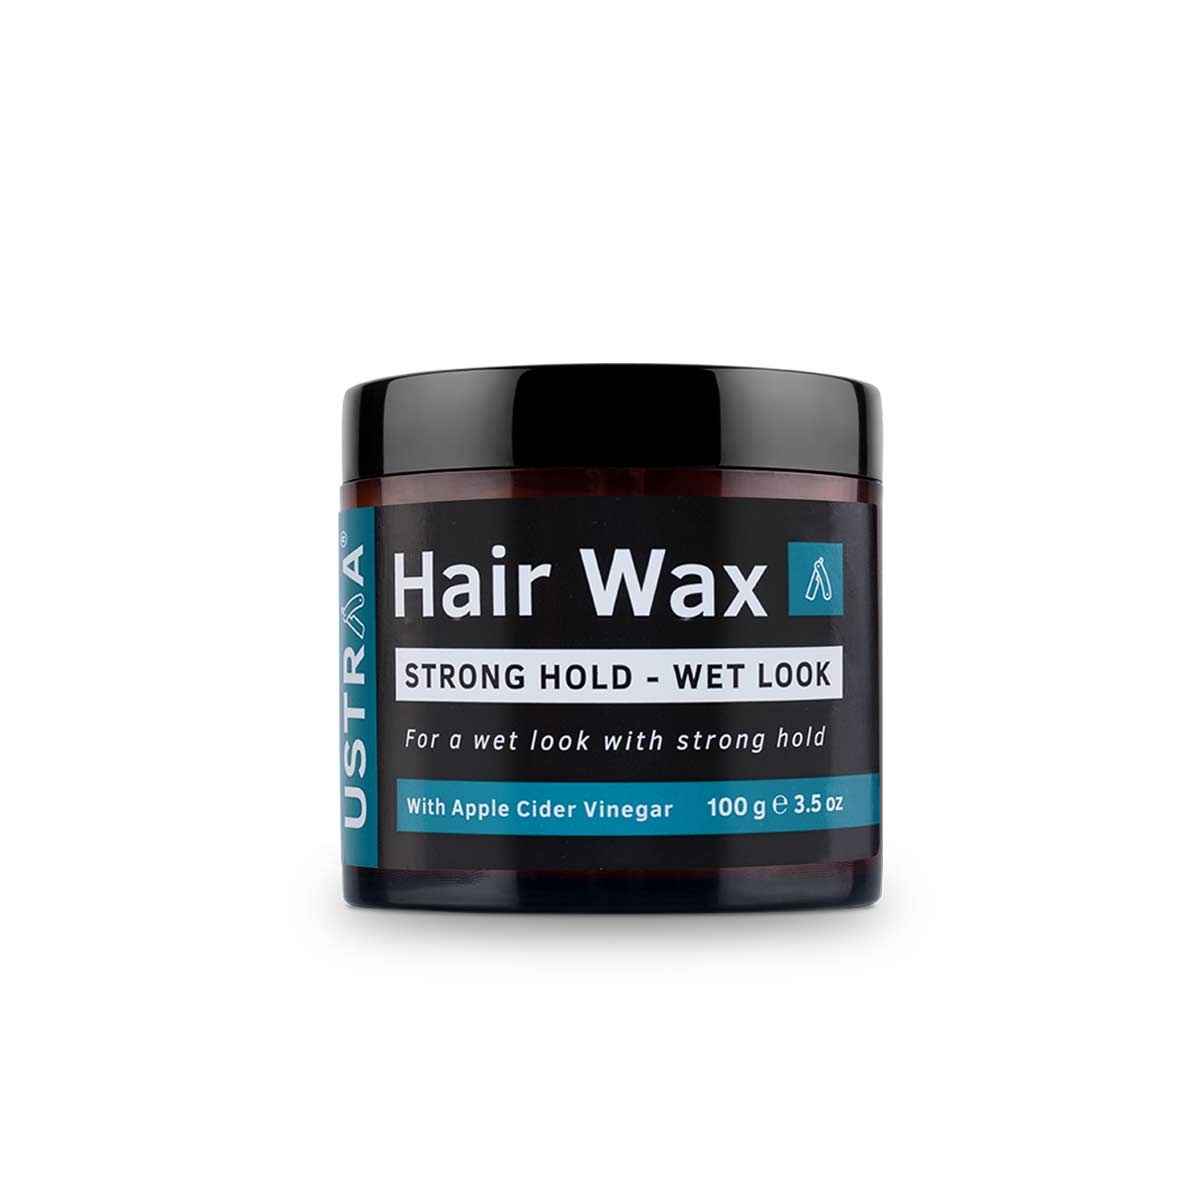 Ustraa | Ustraa Hair Vitalizer Shampoo - 250ml & Hair Wax - Strong Hold, Wet Look - 100g 4